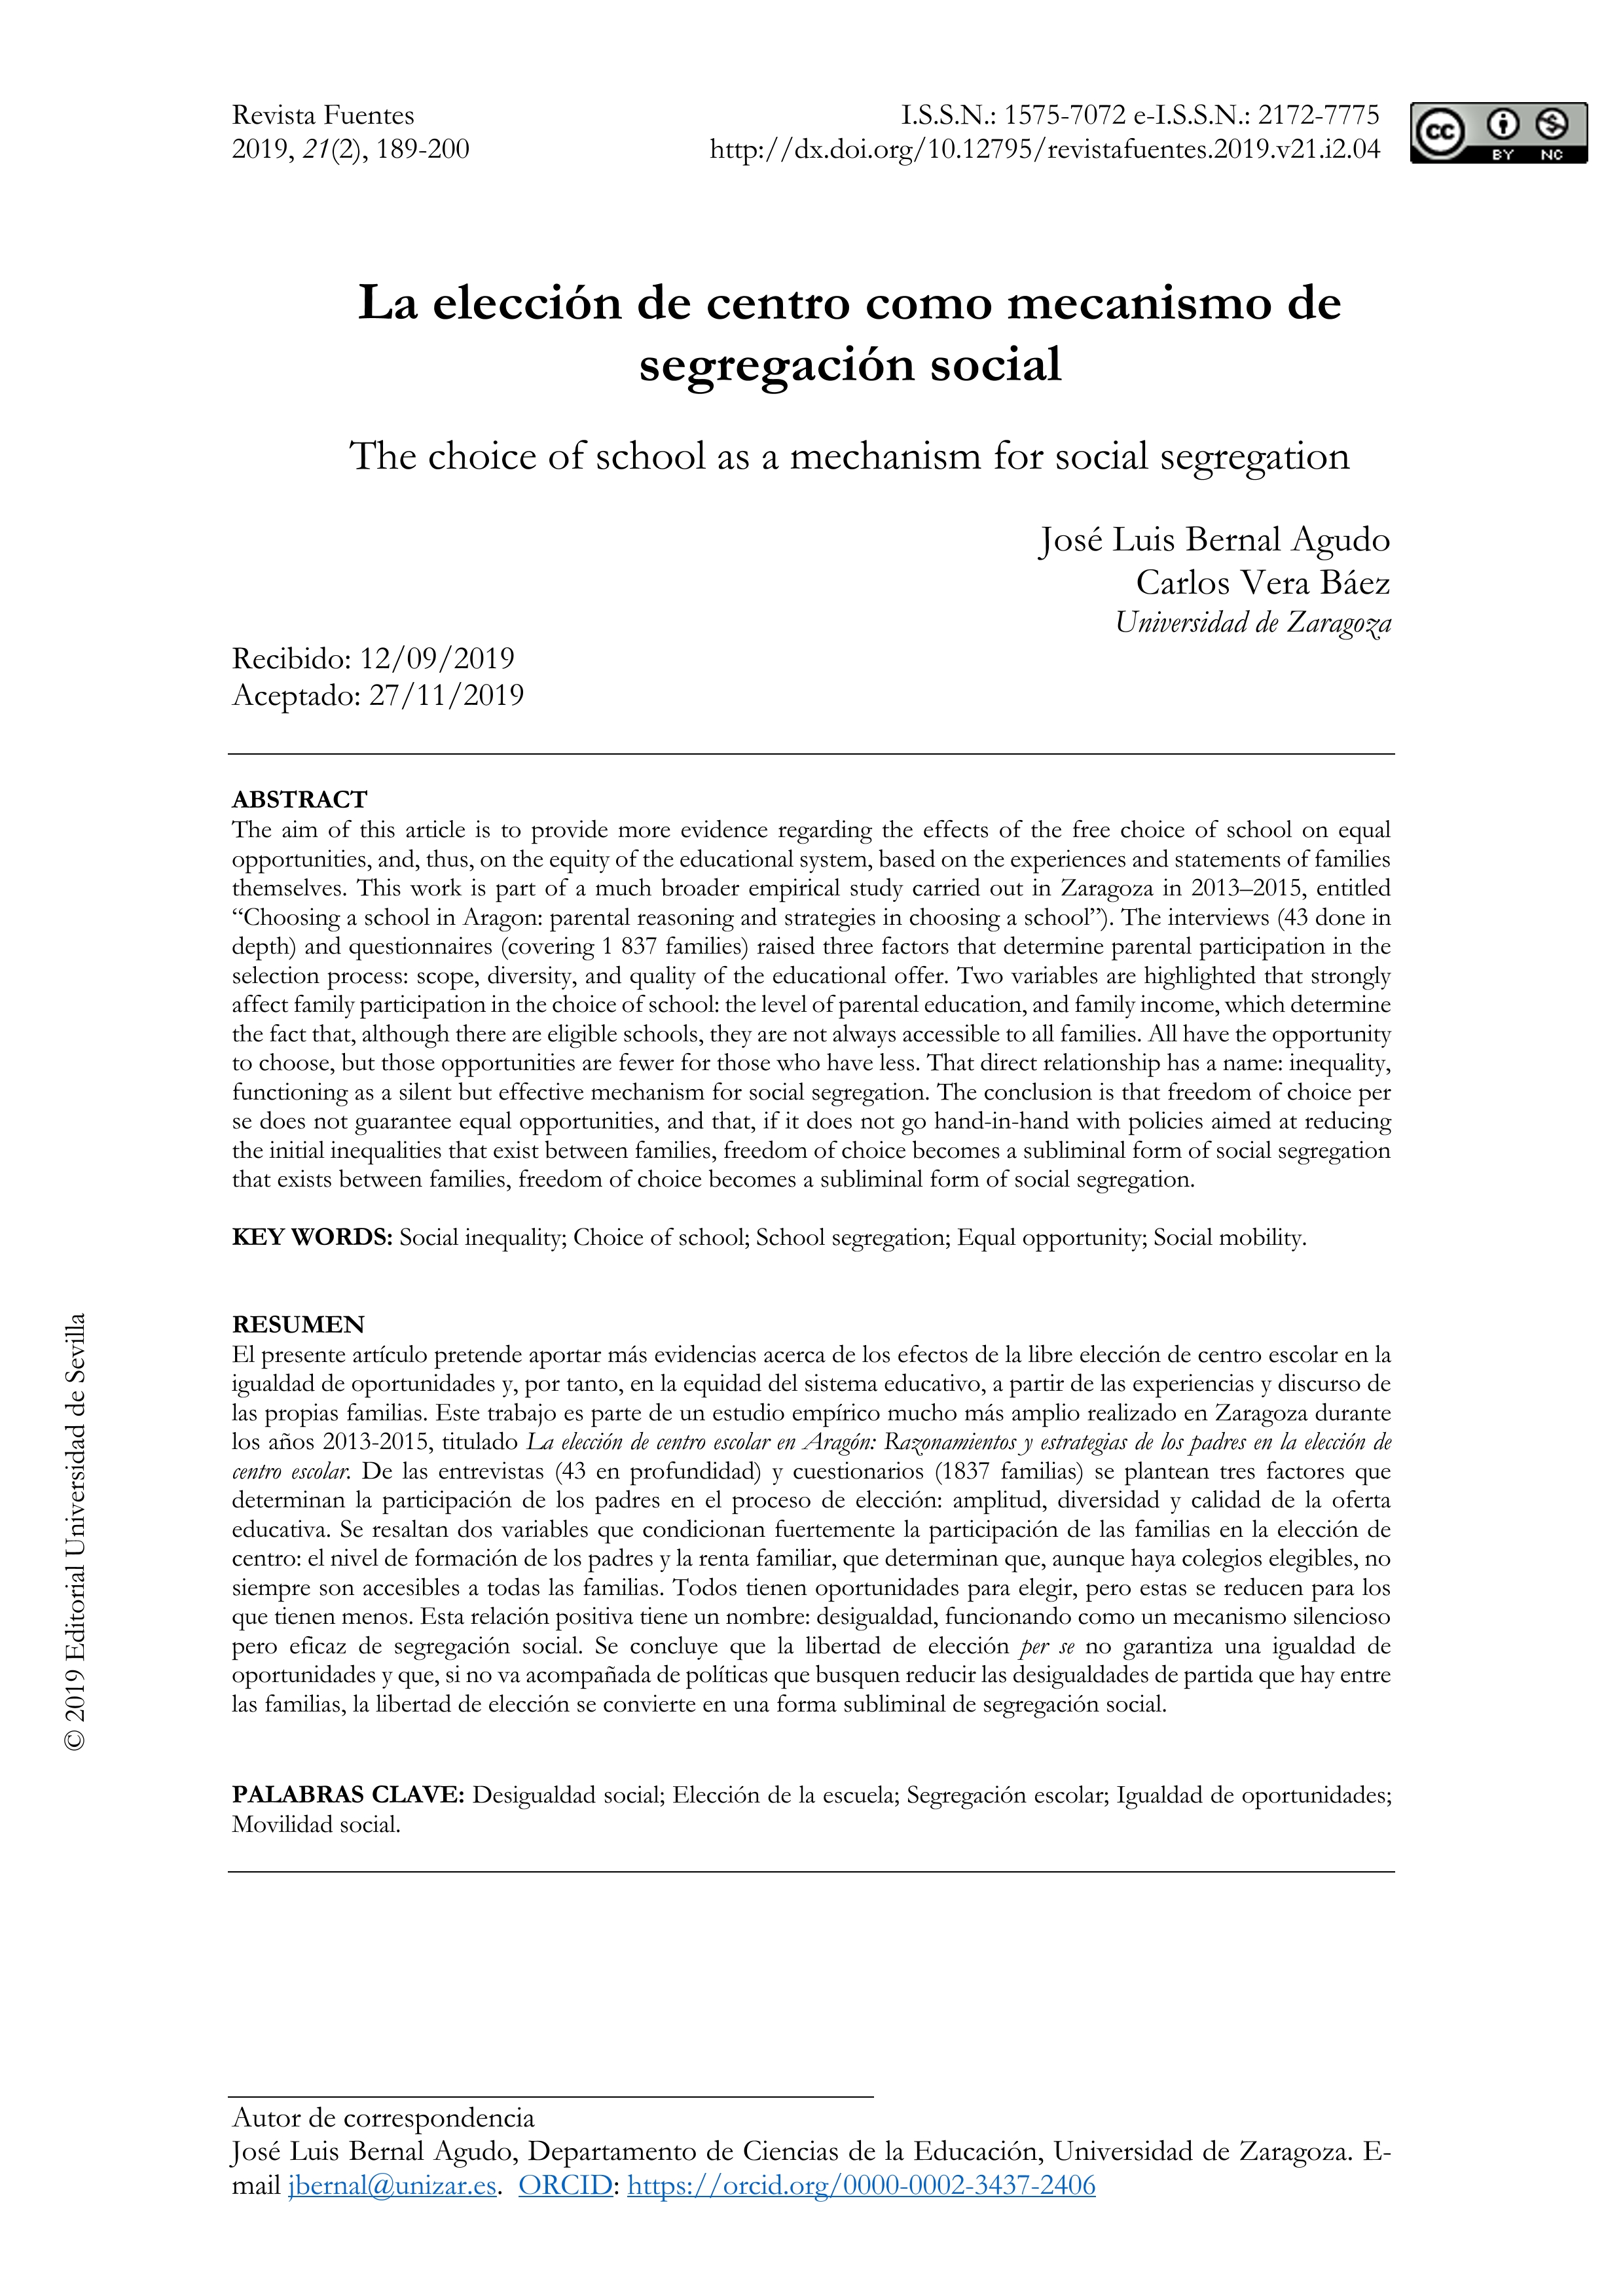 La elección de centro como mecanismo de segregación social